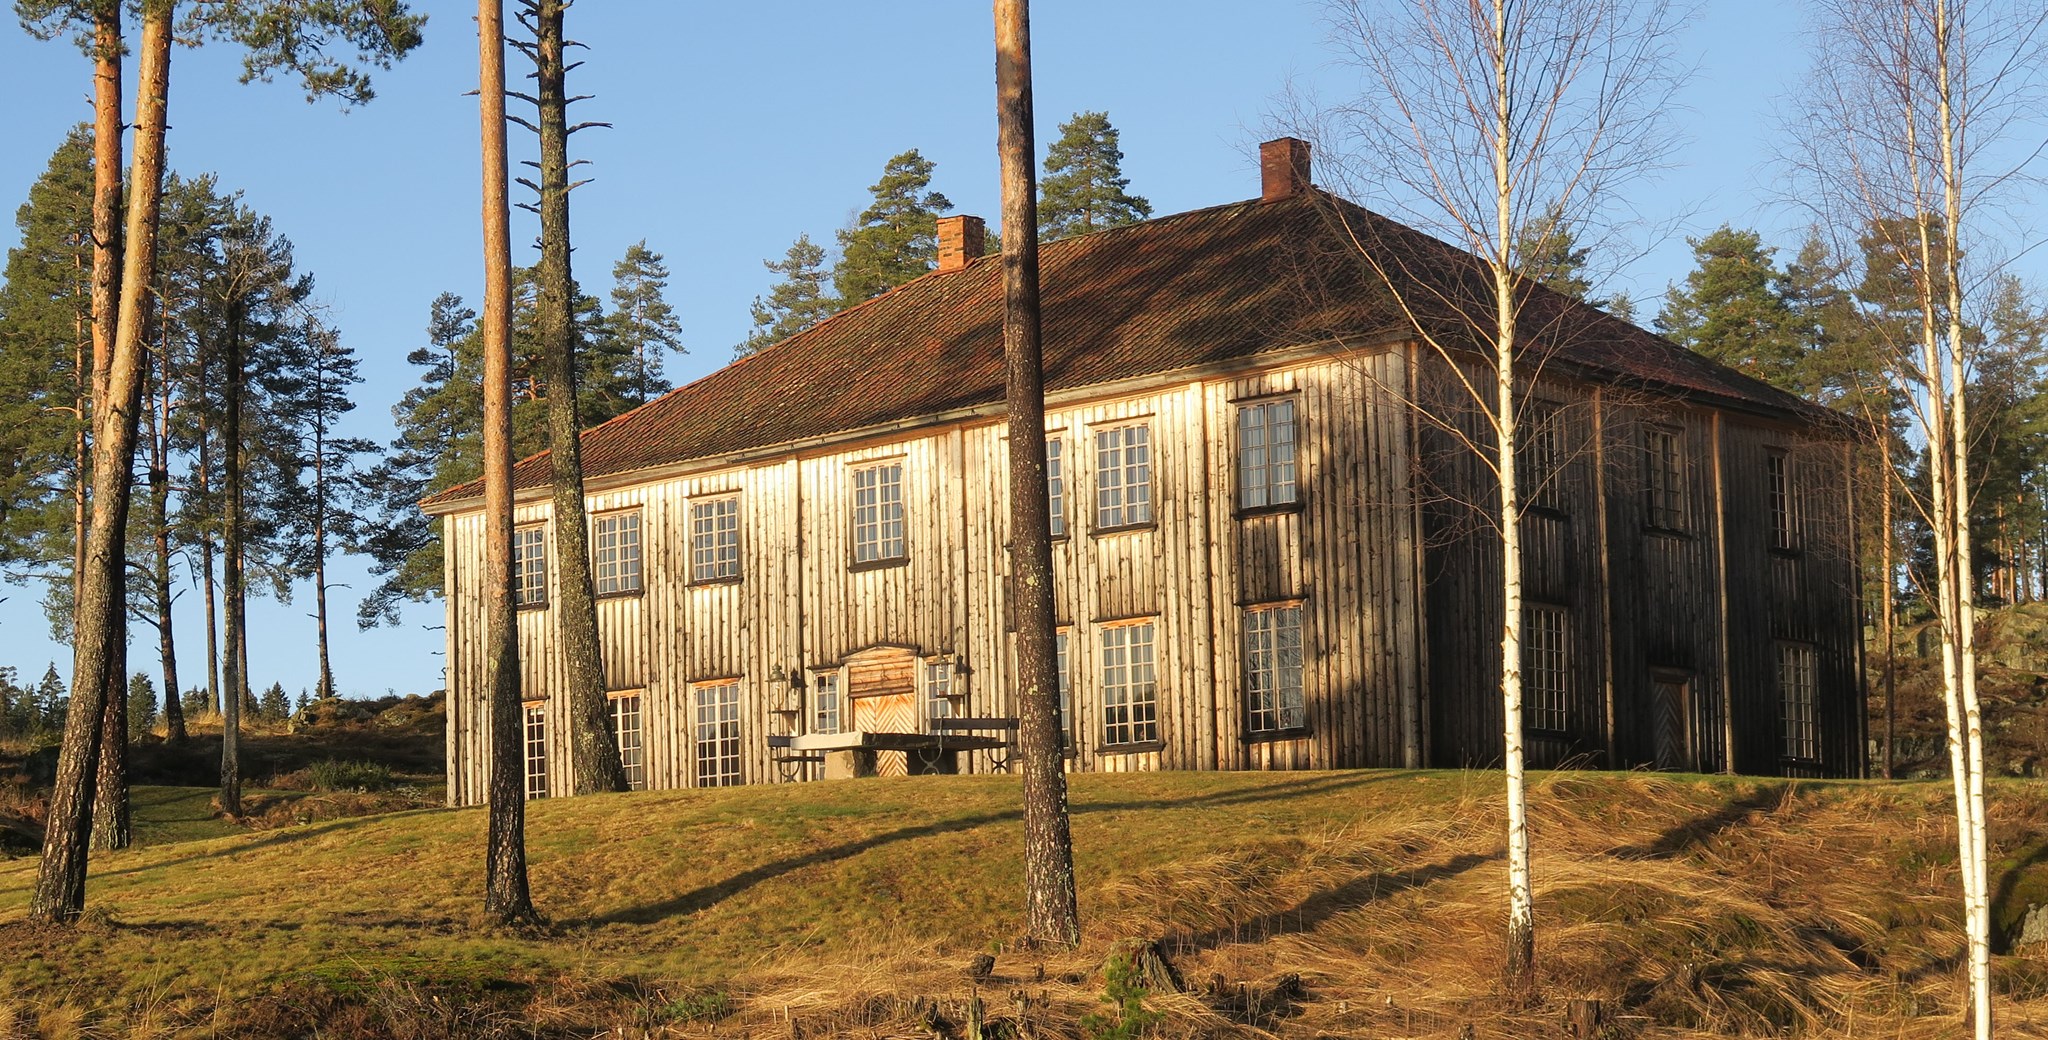 Etter 300 år har Meyers barokkpalé fått et nytt liv på Børter gård i Enebakk, sørøst for Oslo.